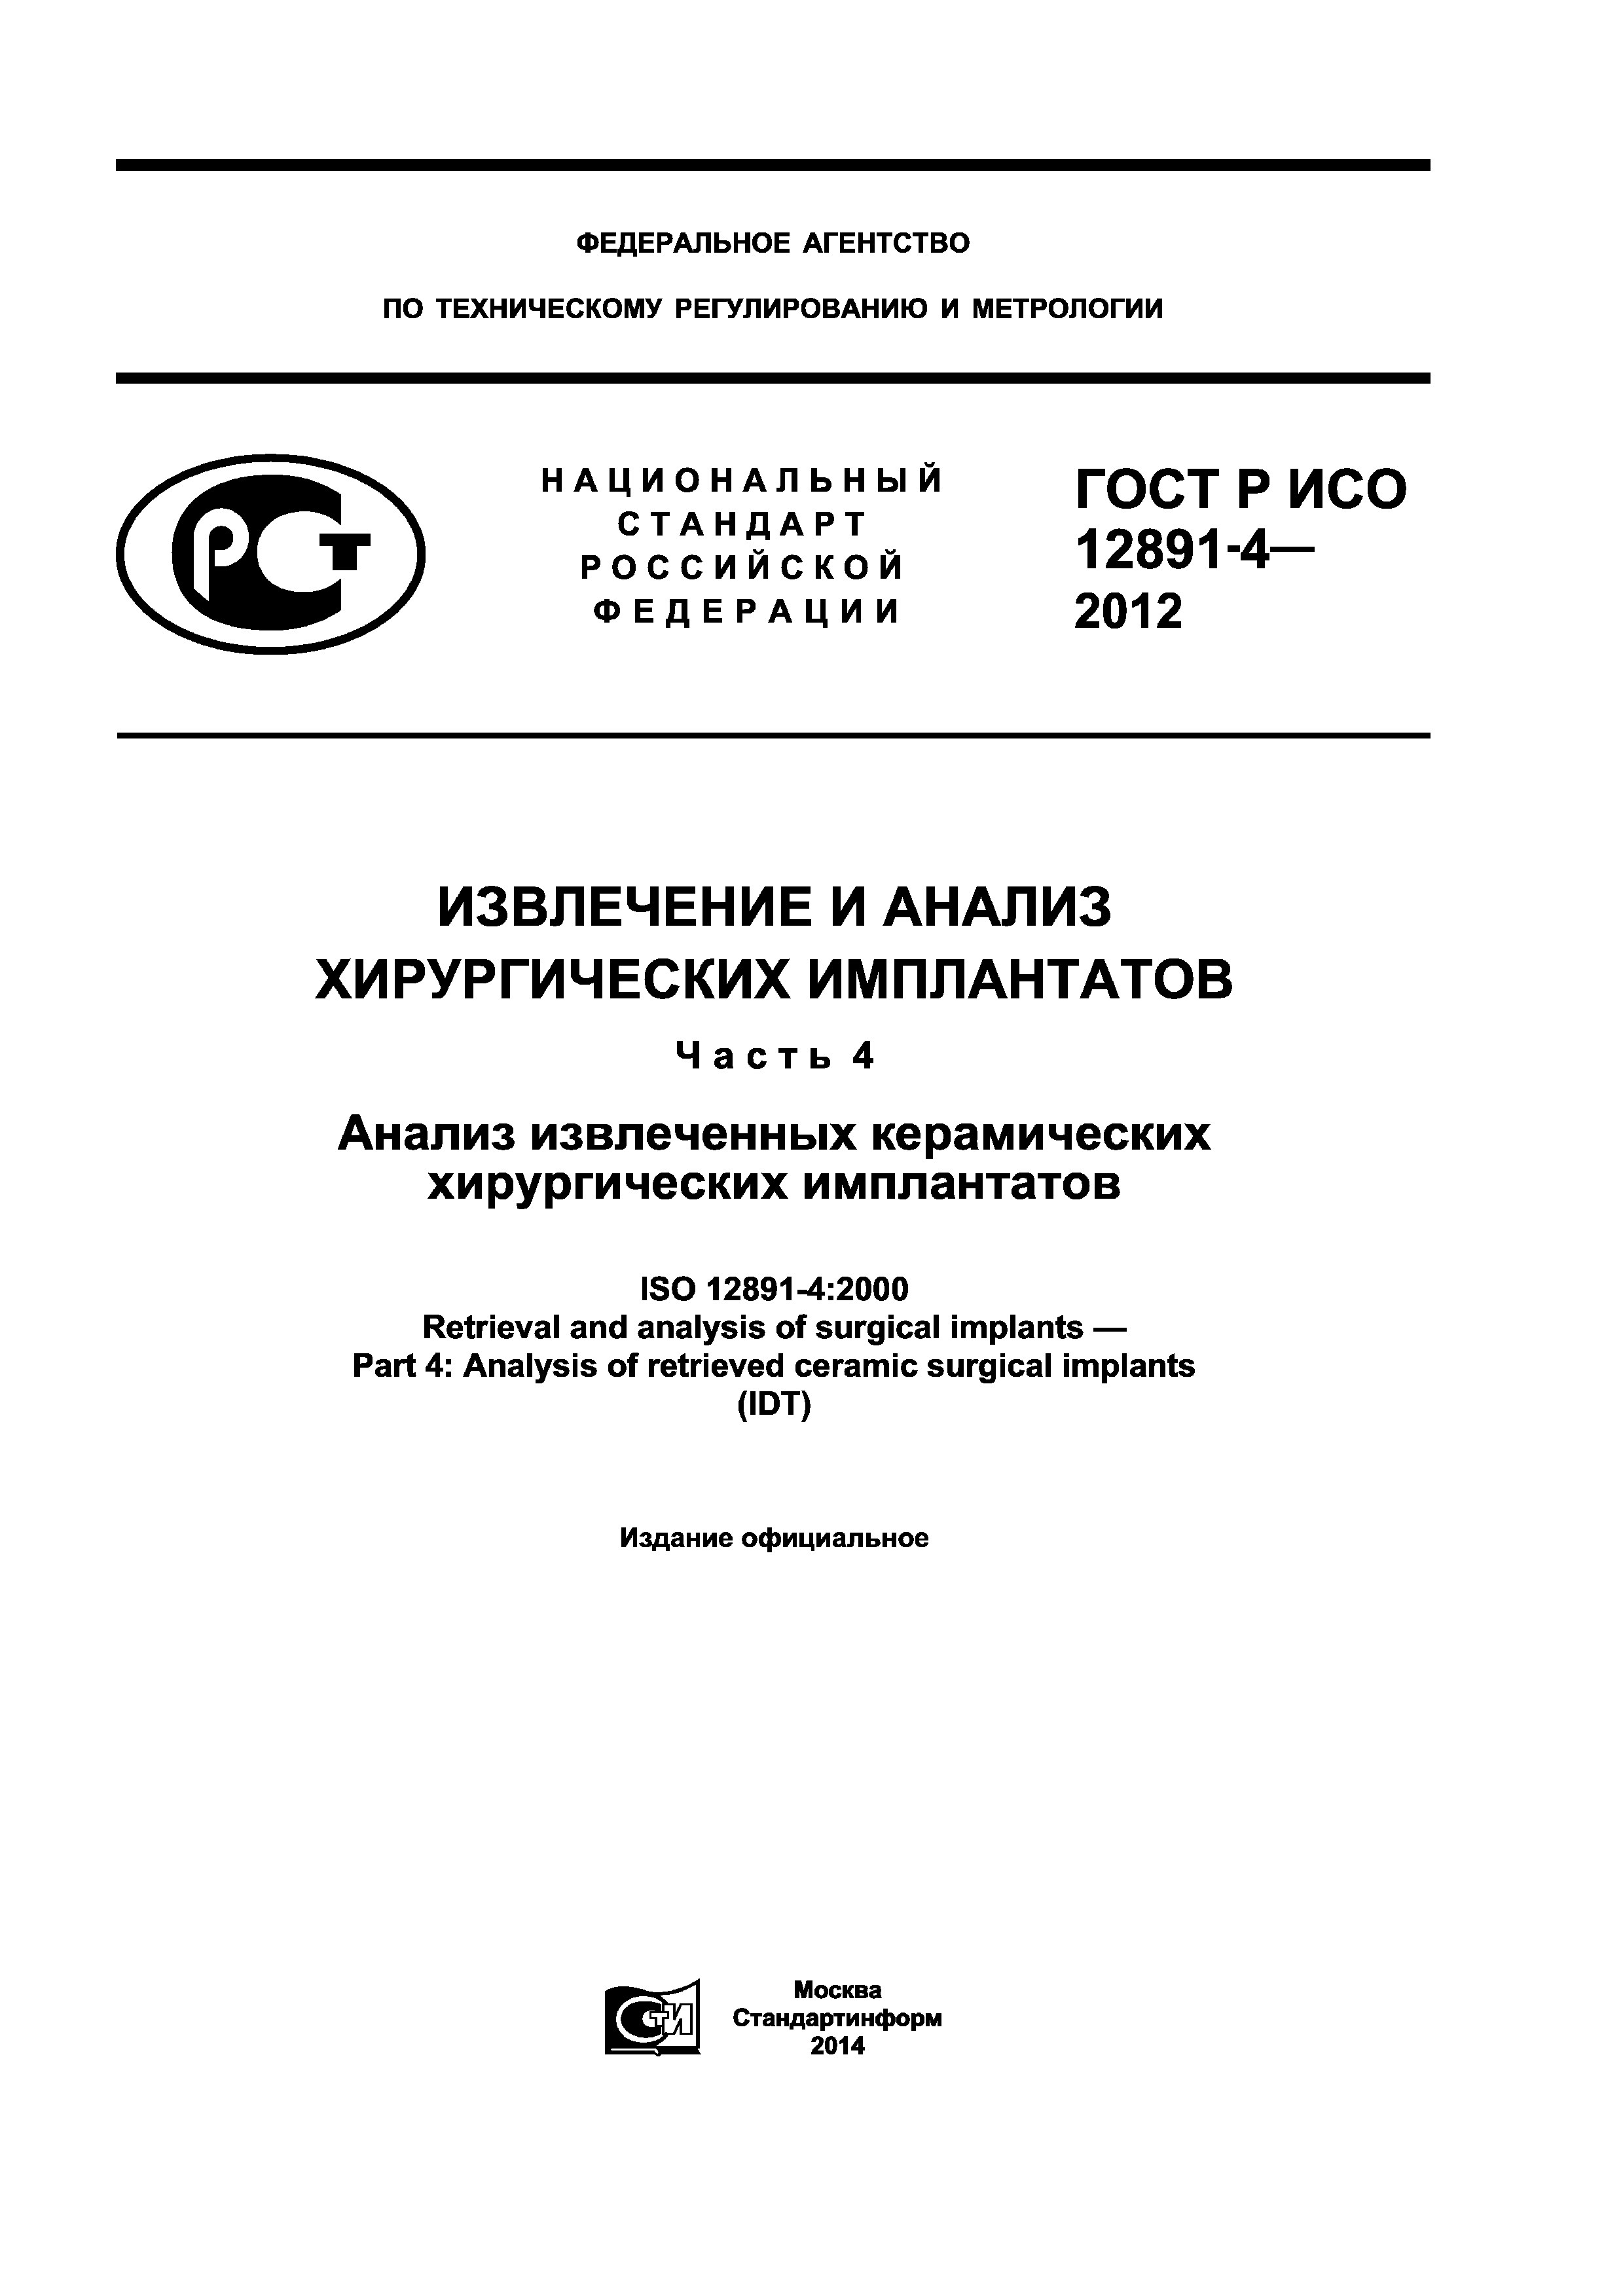 ГОСТ Р ИСО 12891-4-2012